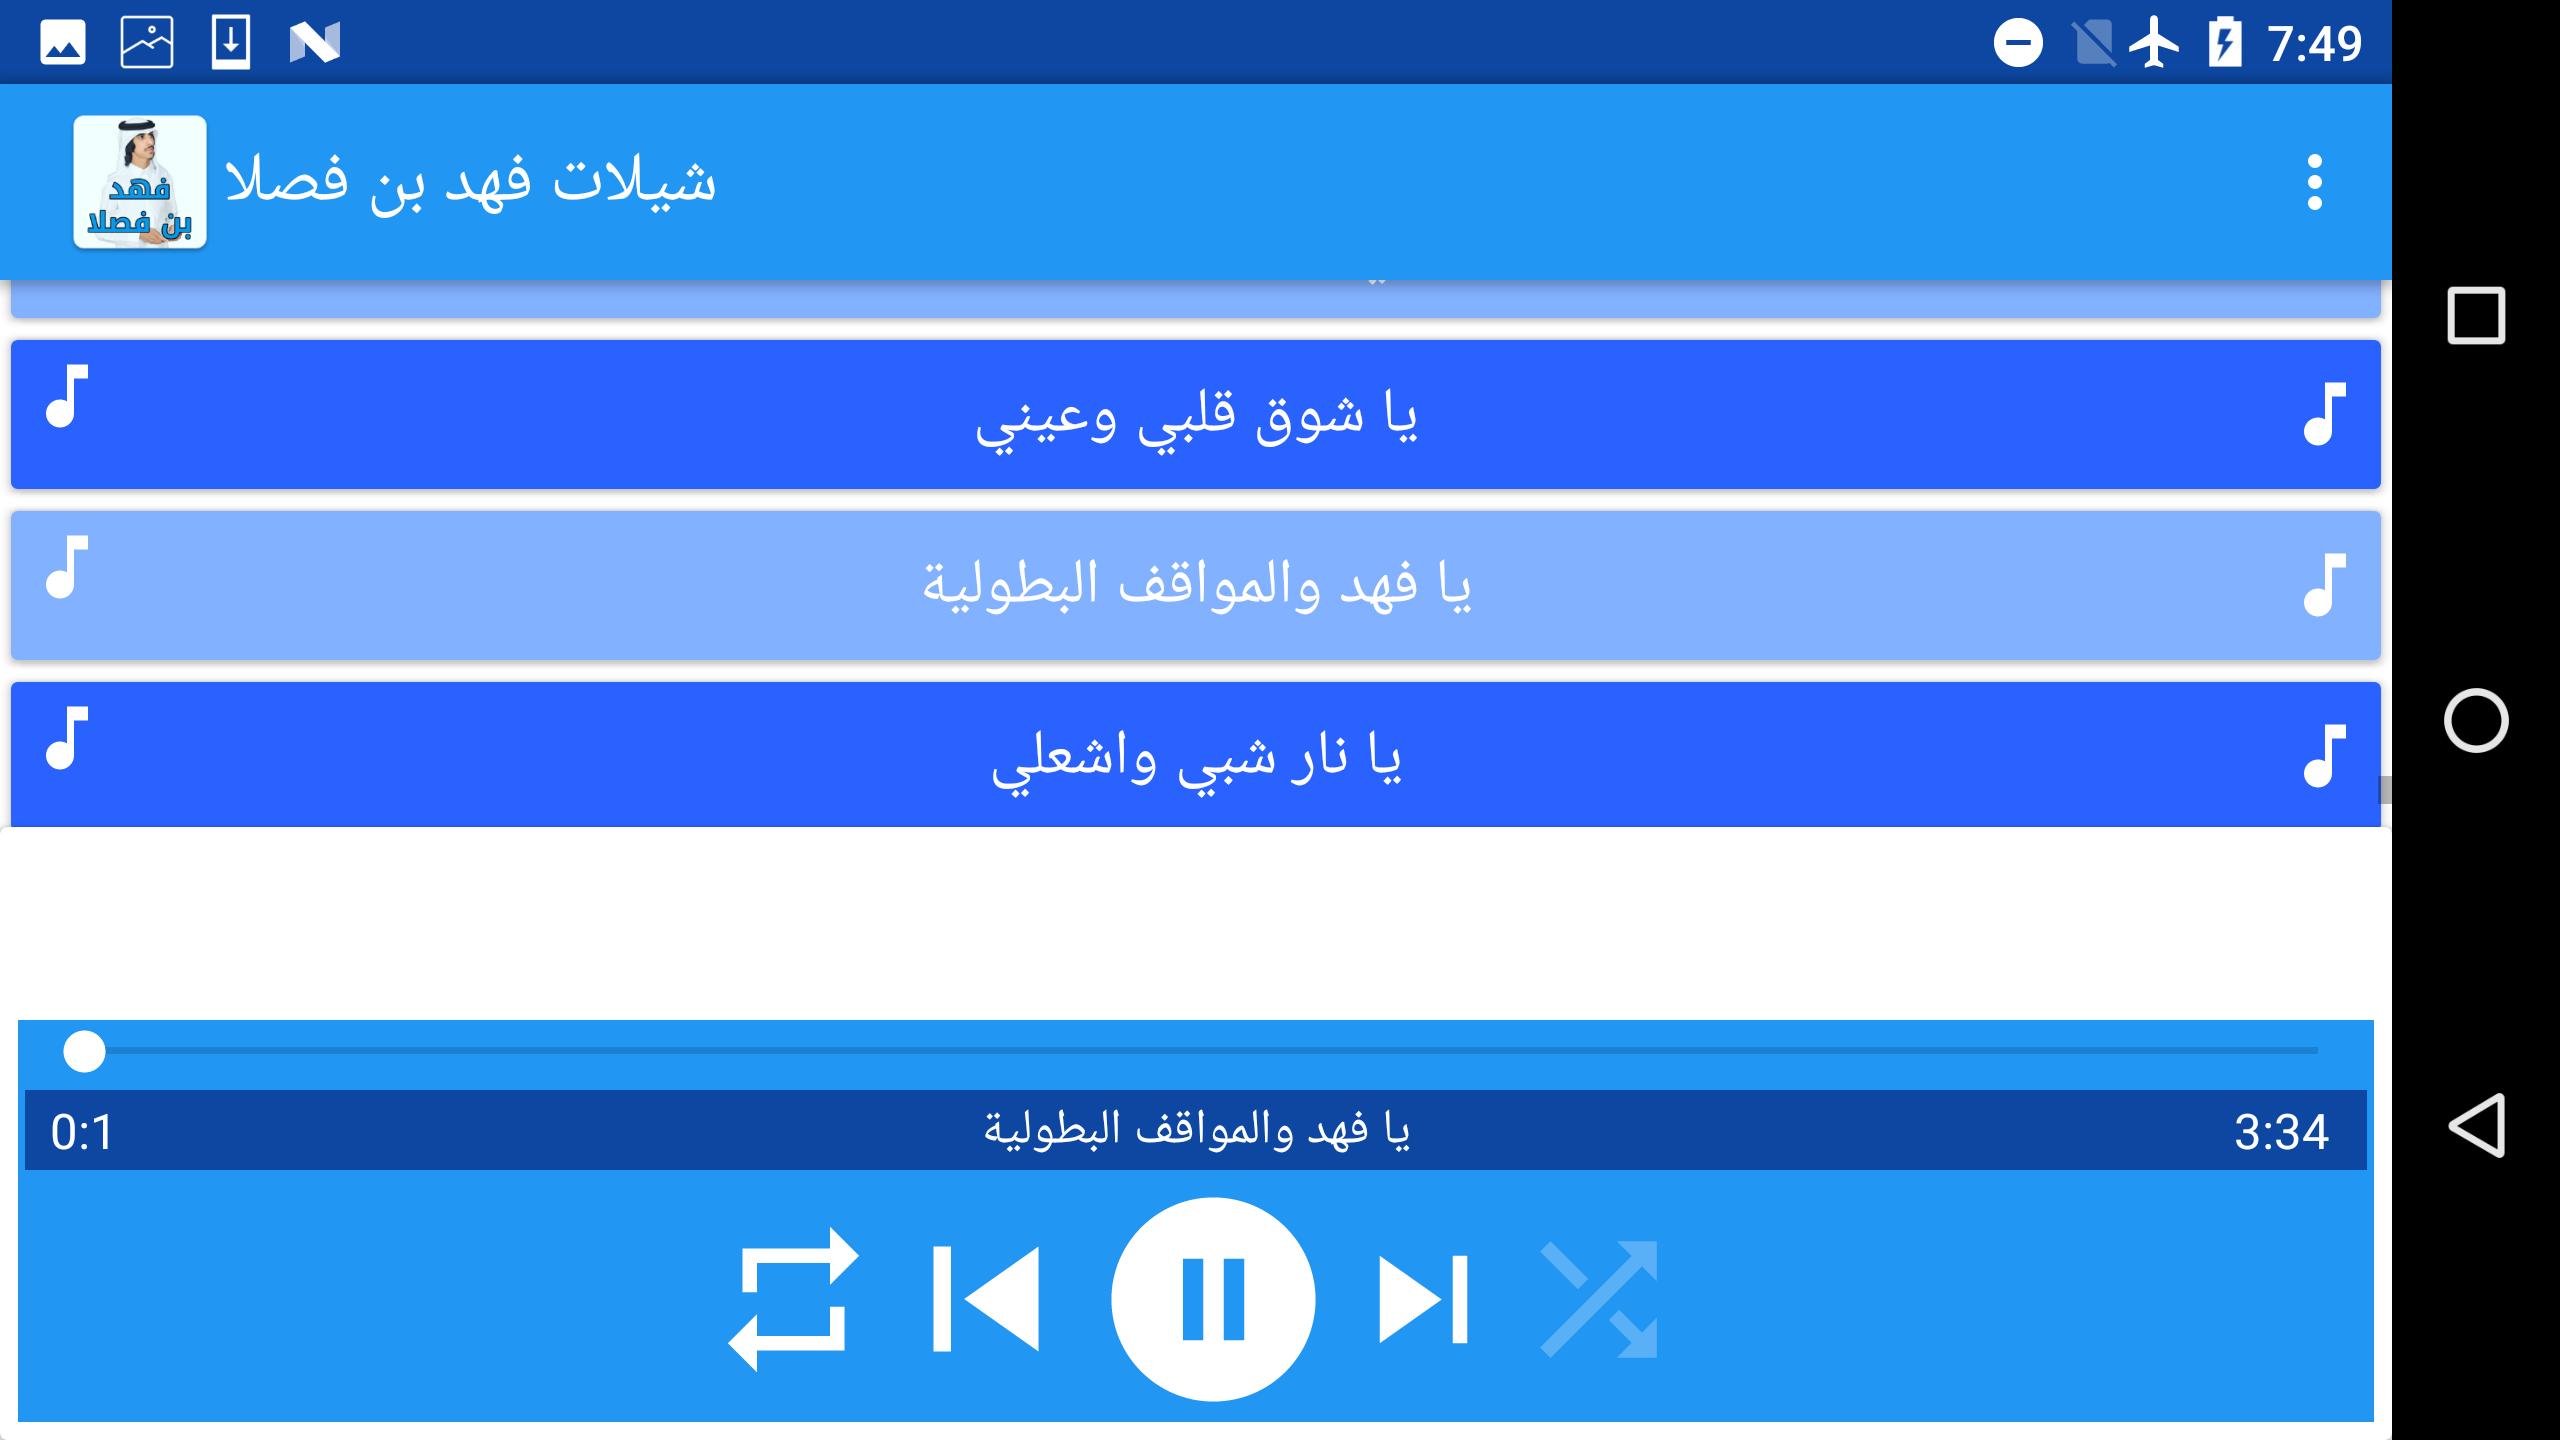 شيلات فهد بن فصلا For Android Apk Download